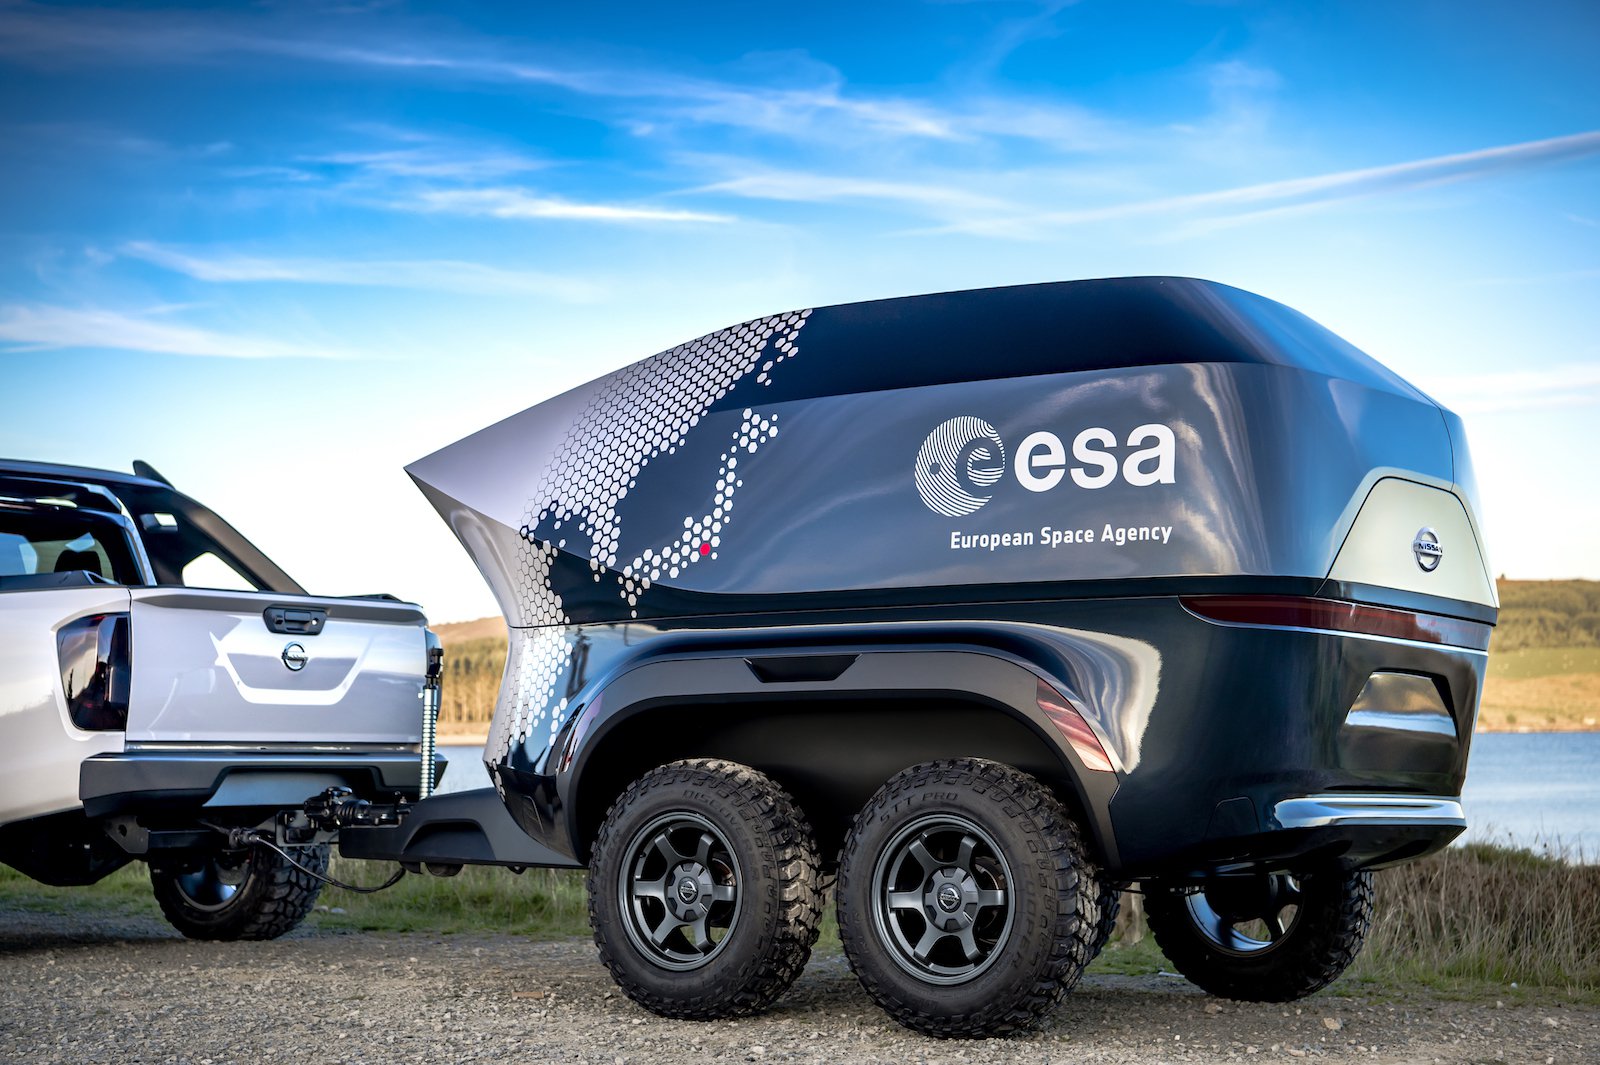 Nissan i ESA przedstawili suv dla astronomów, wyposażony w teleskop